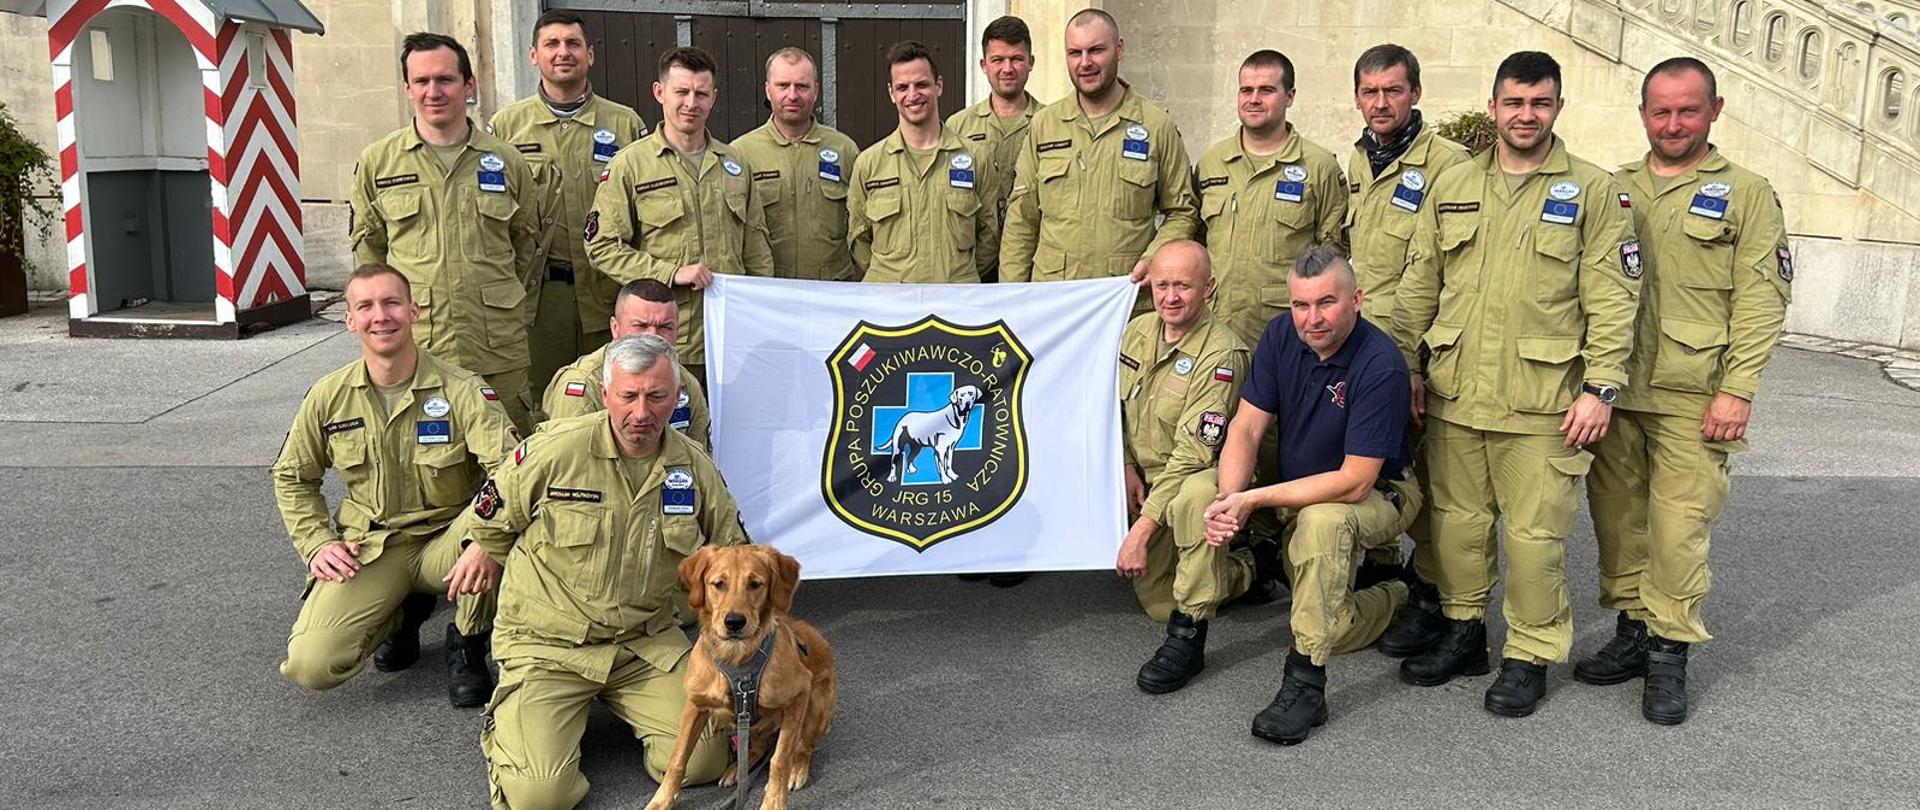 Strażacy z grupy specjalistycznej Poszukiwawczo-Ratowniczej wraz z psem. Na środku zdjęcia strażacy trzymają transparent z logo Grupy Poszukiwawczo-Ratowniczej.